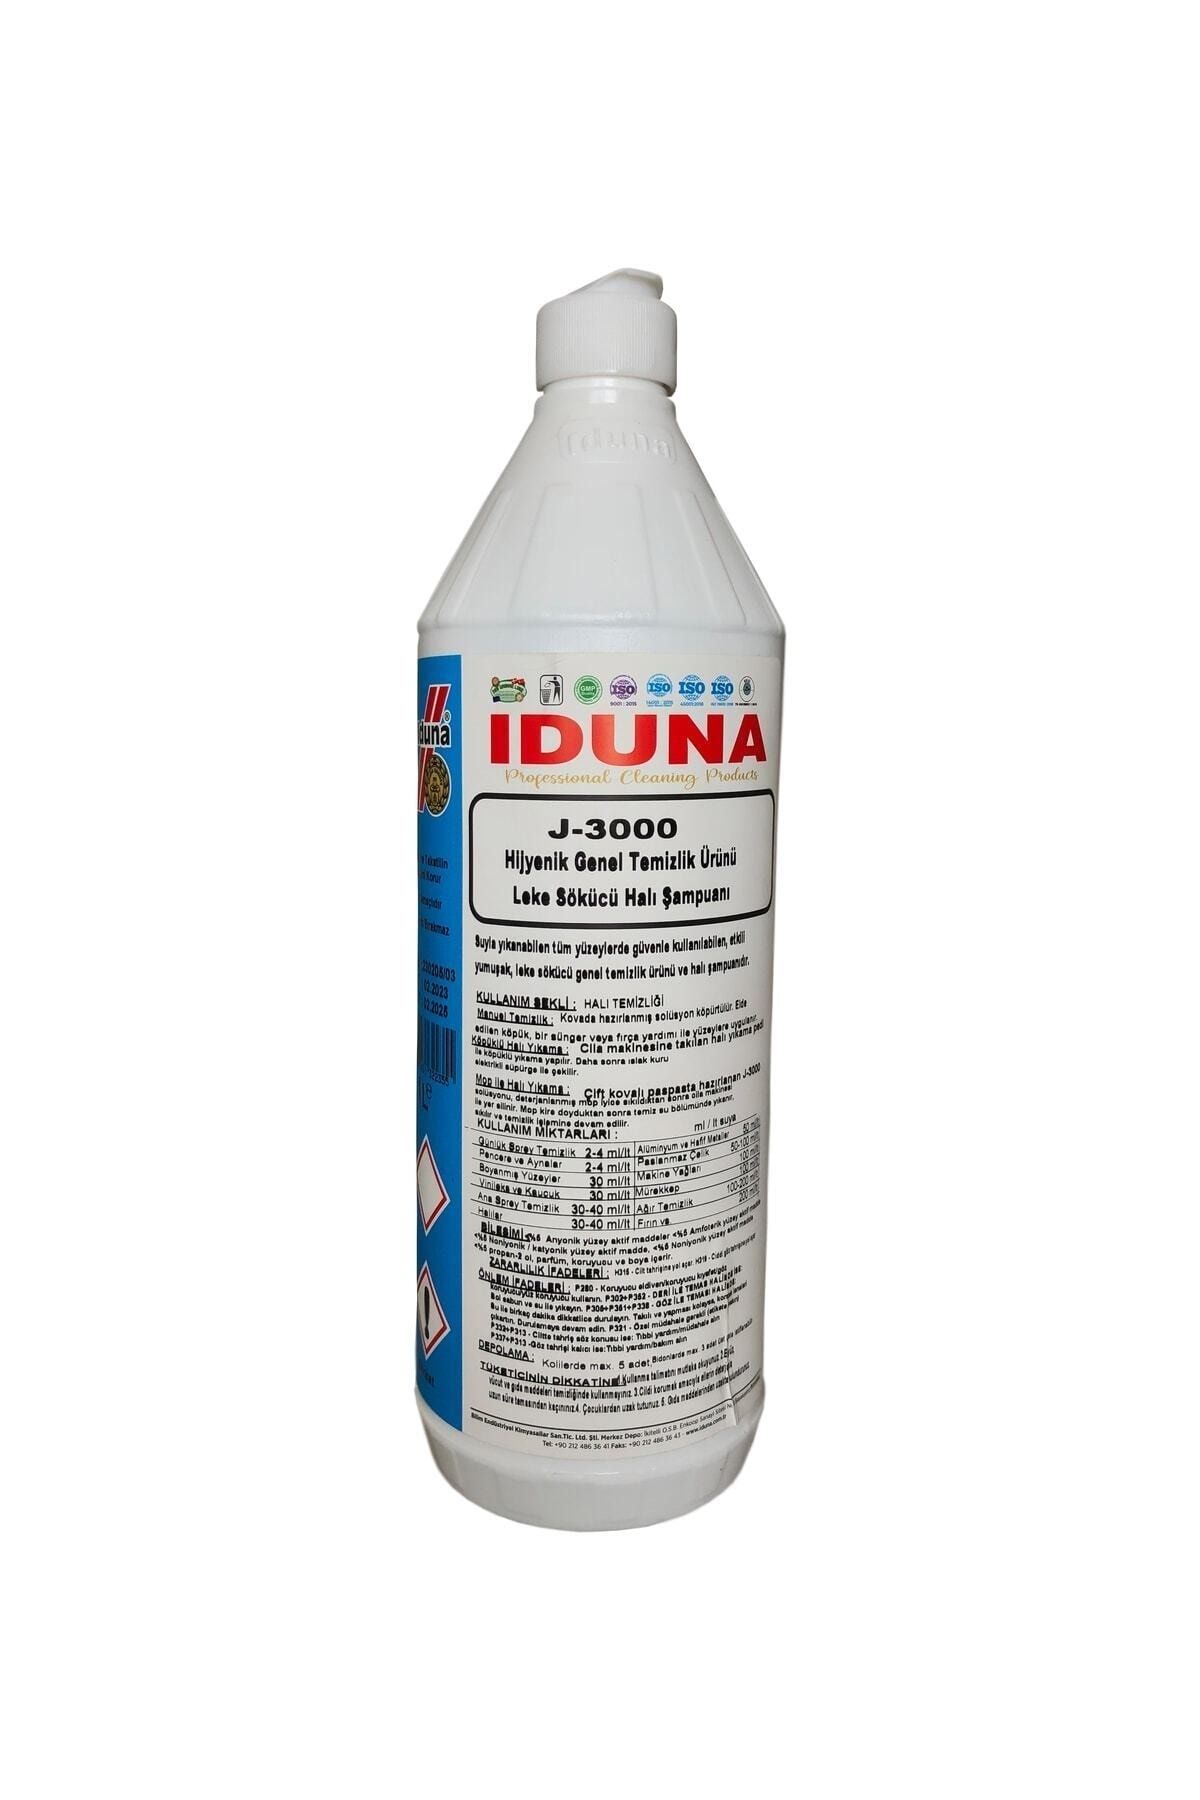 Iduna J-3000 Hijyenik Genel Temizlik Leke Sökücü Halı Şampuanı 1 Lt